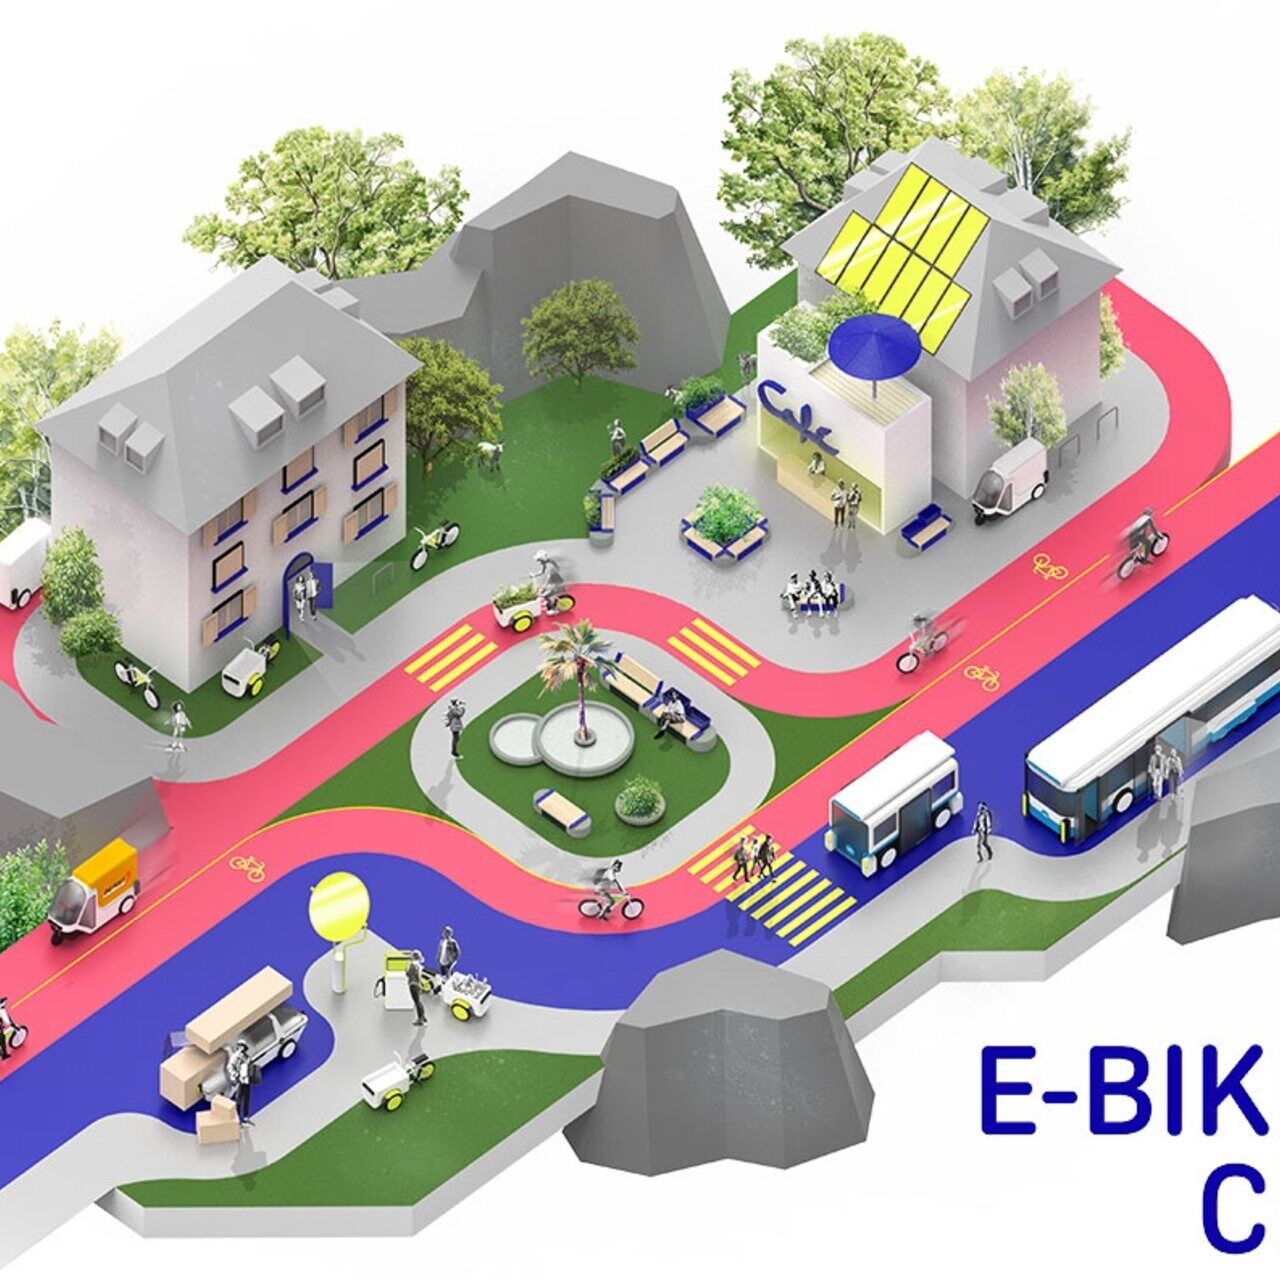 Biciclette elettriche: un esempio stilizzato di E-​Bike City con strade a senso unico per gli autoveicoli e a doppio senso per i velocipedi